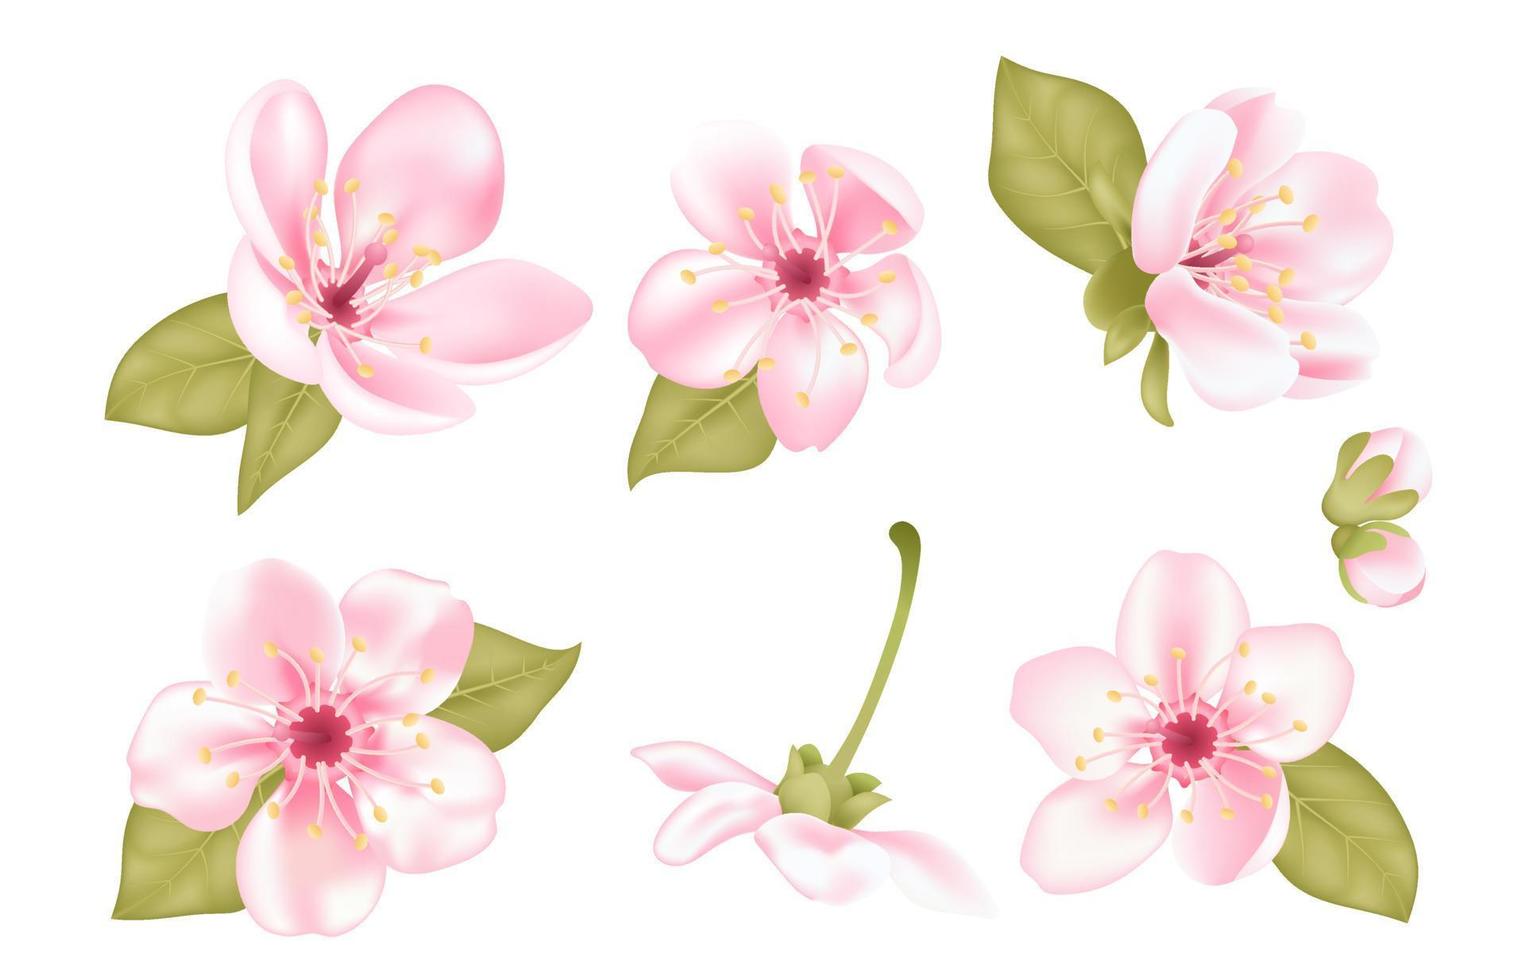 samling av skön rosa sakura körsbär träd blommor med grön löv isolerat på transparent bakgrund. uppsättning av japansk körsbär träd blomma. blommig vår design vektor illustration.